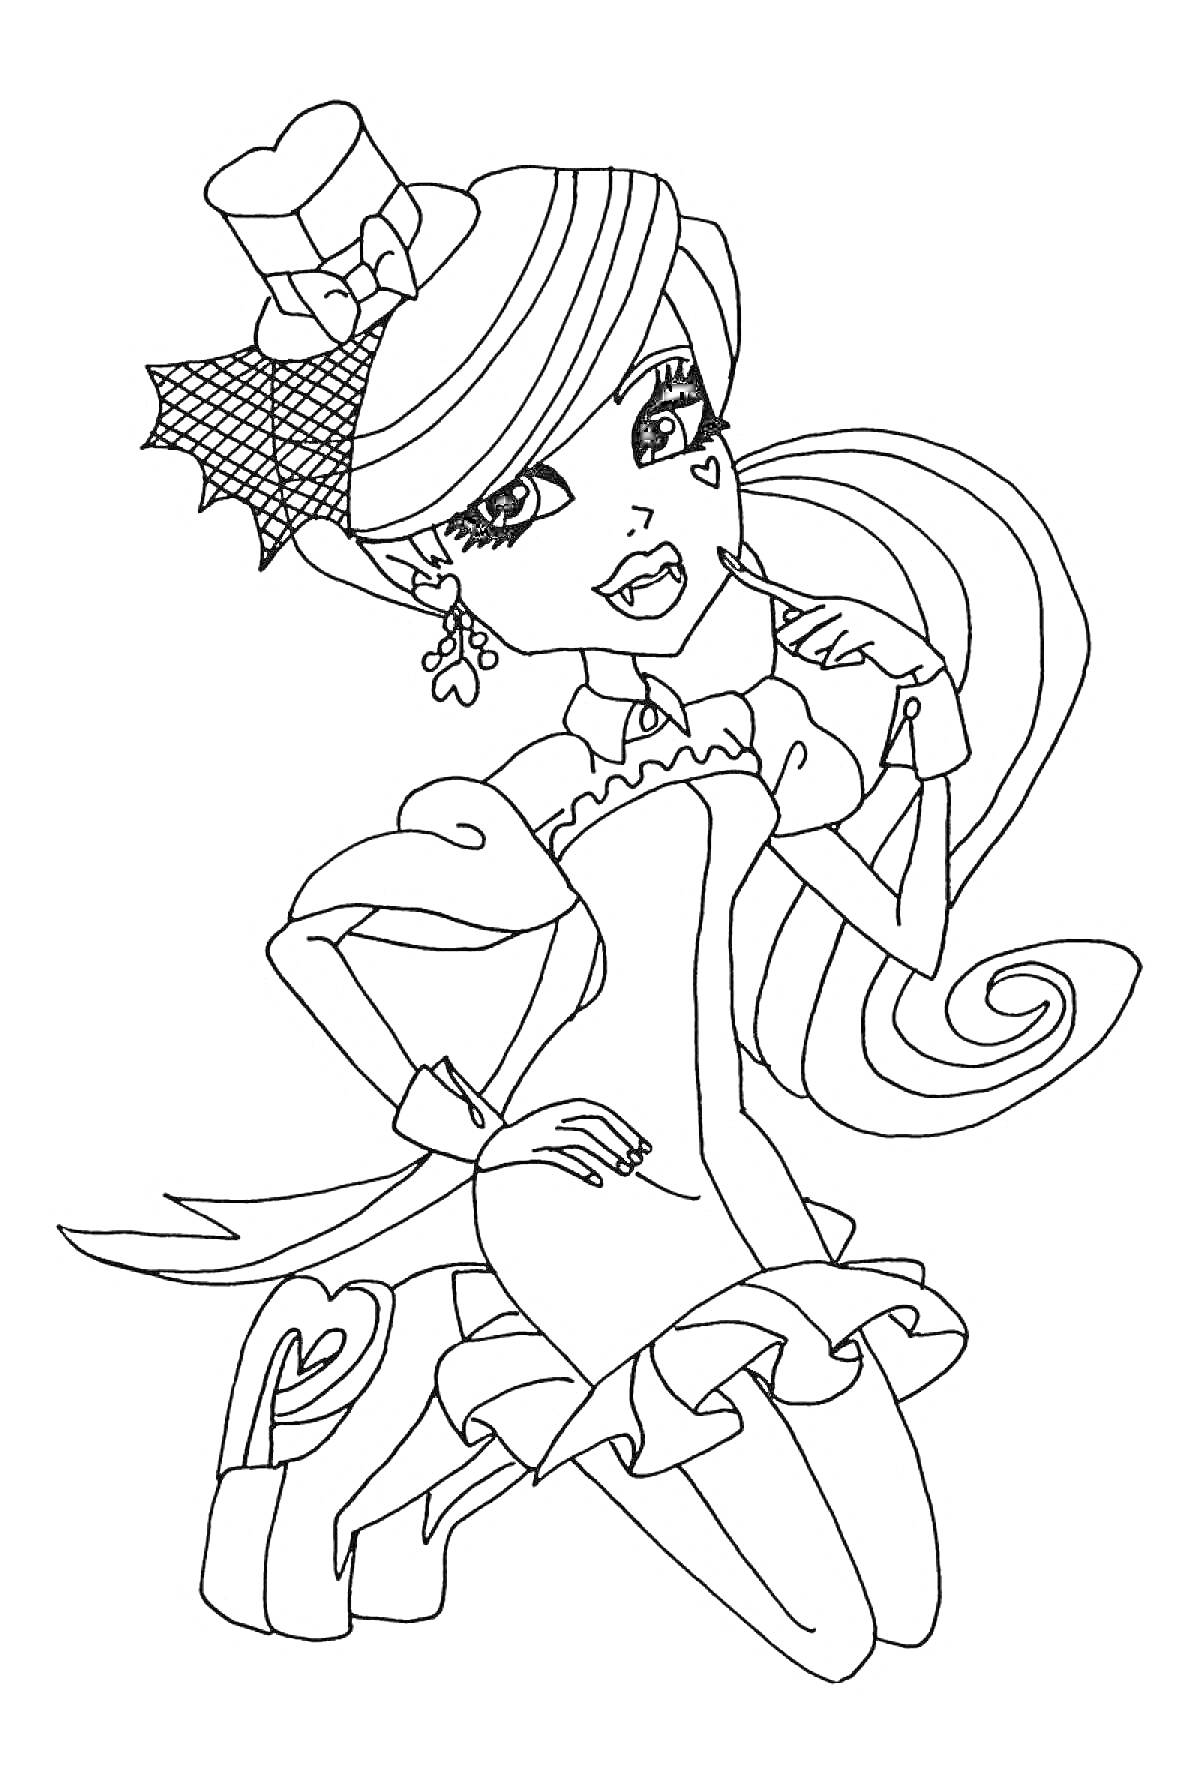 Девочка в шляпке с сердечком на щеке, в платье с рюшами и паучьей сеткой в волосах, с украшением в виде звезды на ушах